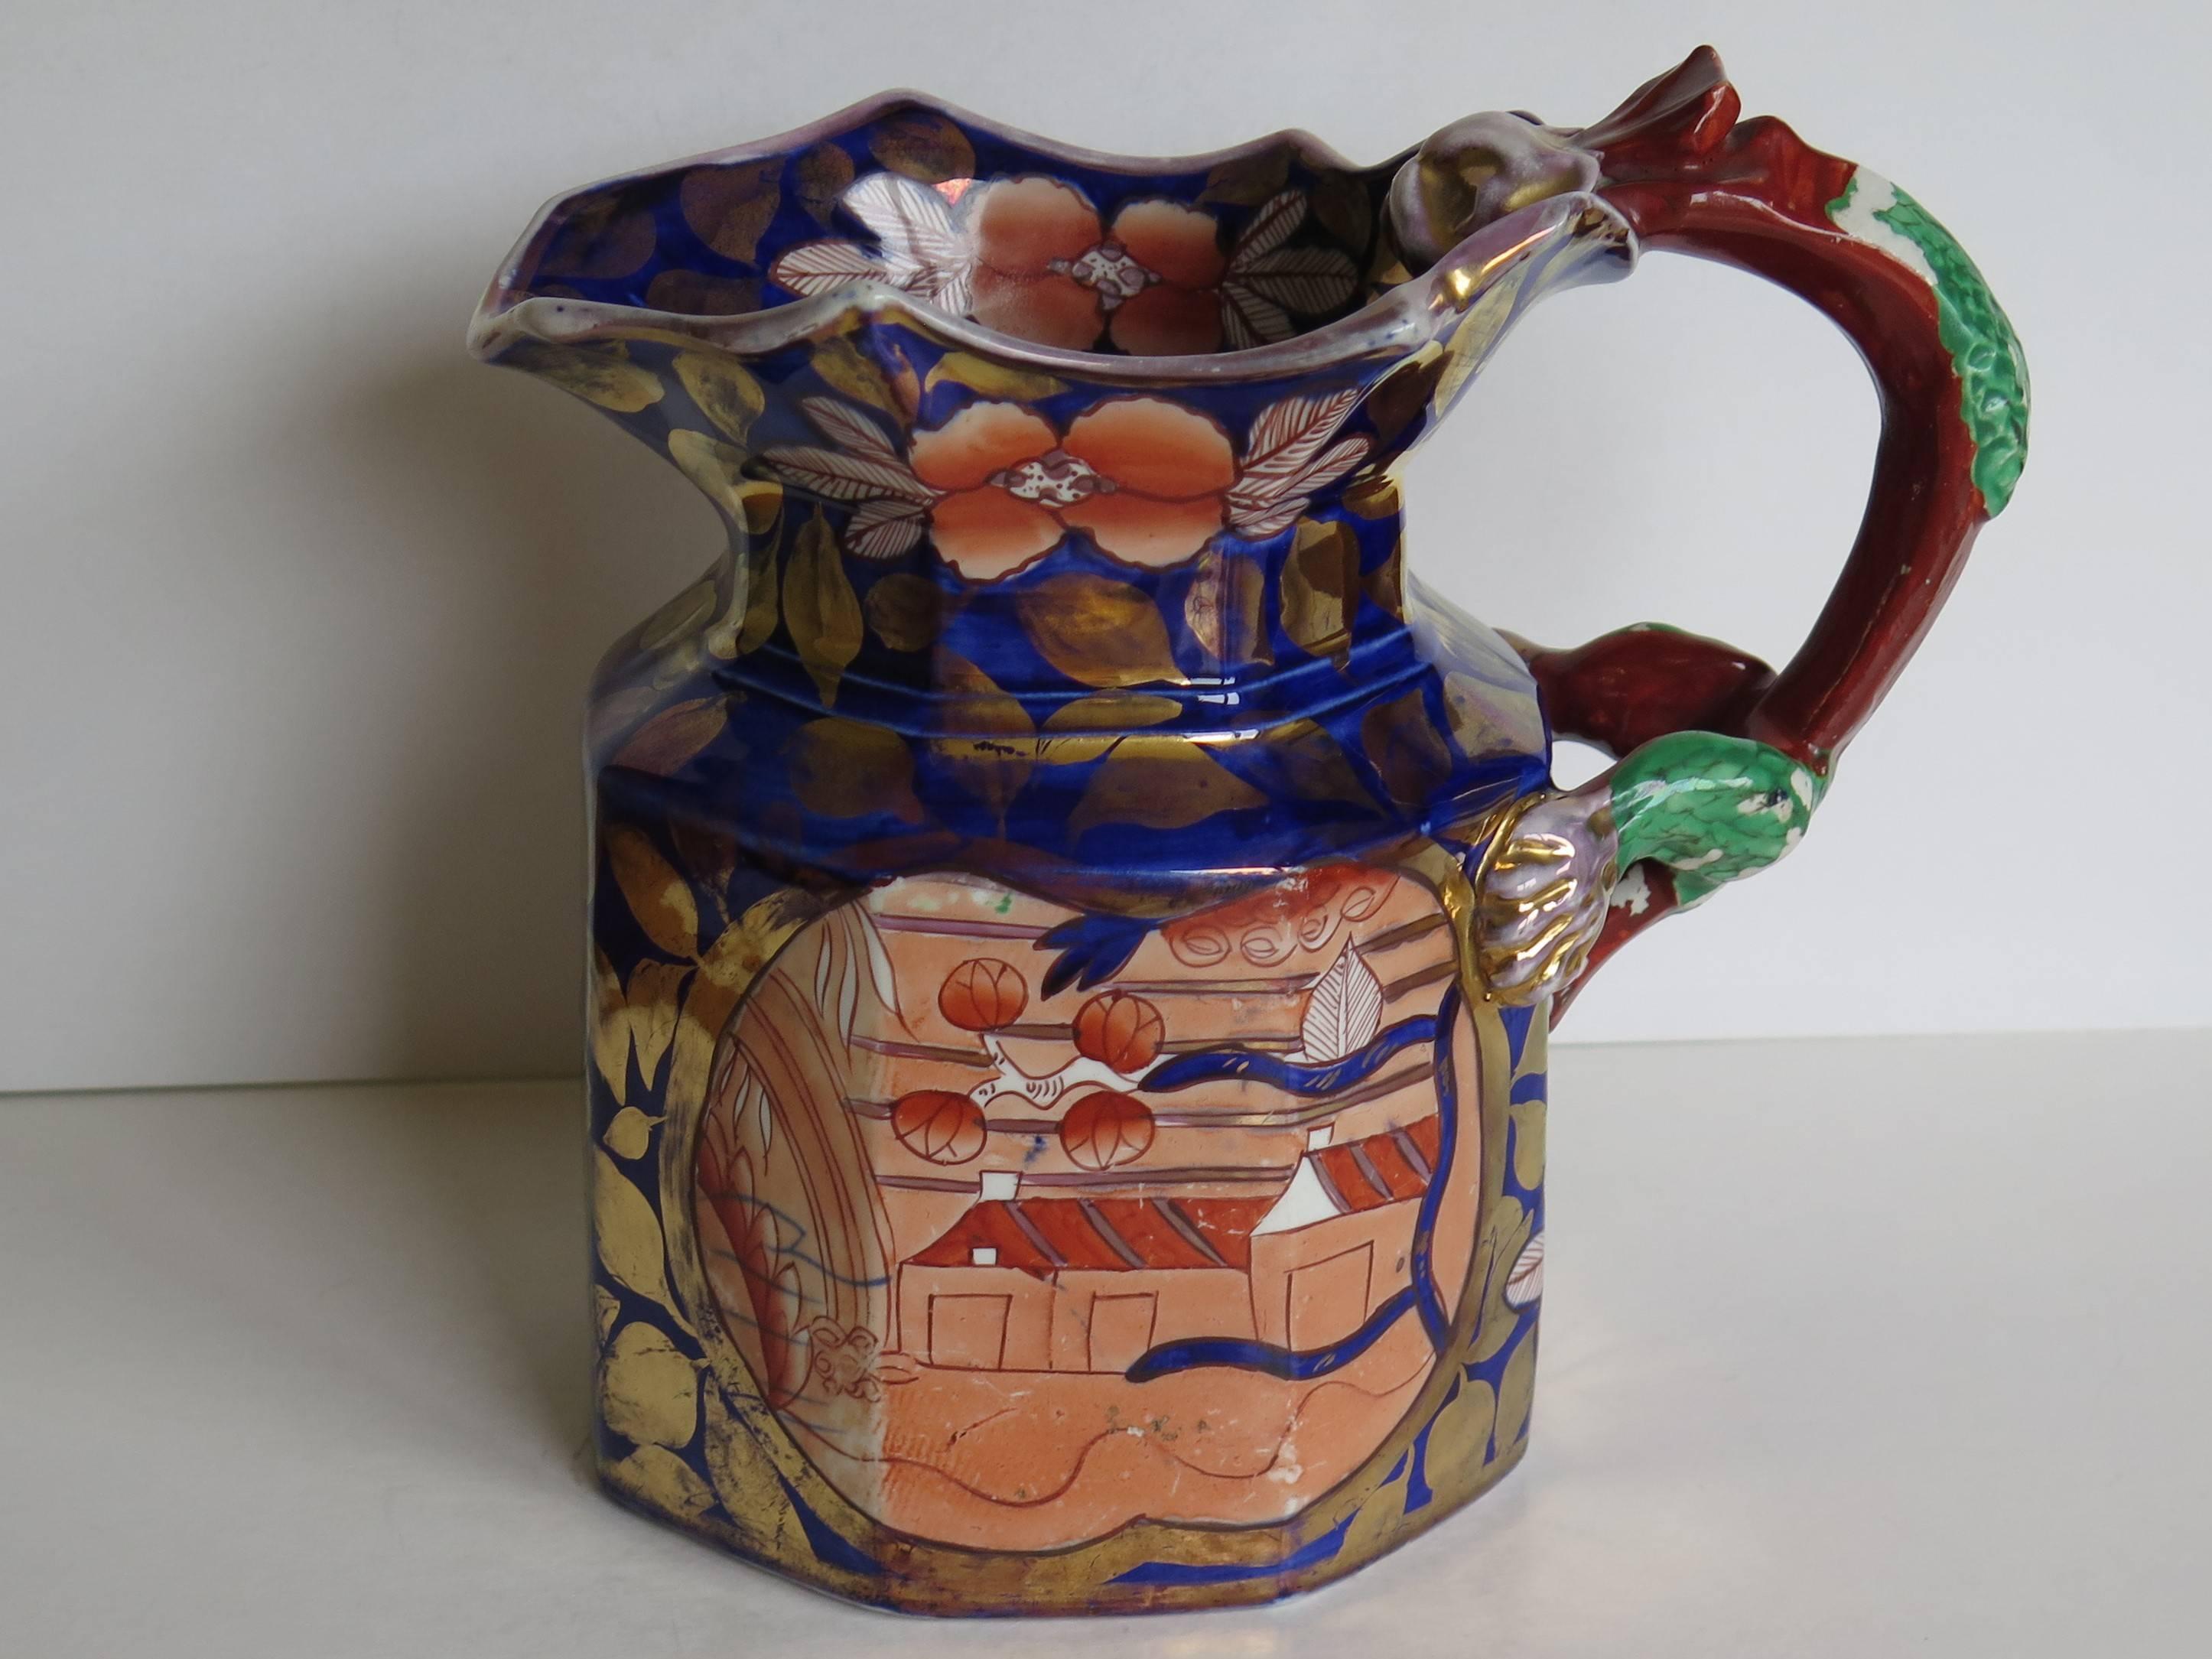 large jug or pitcher